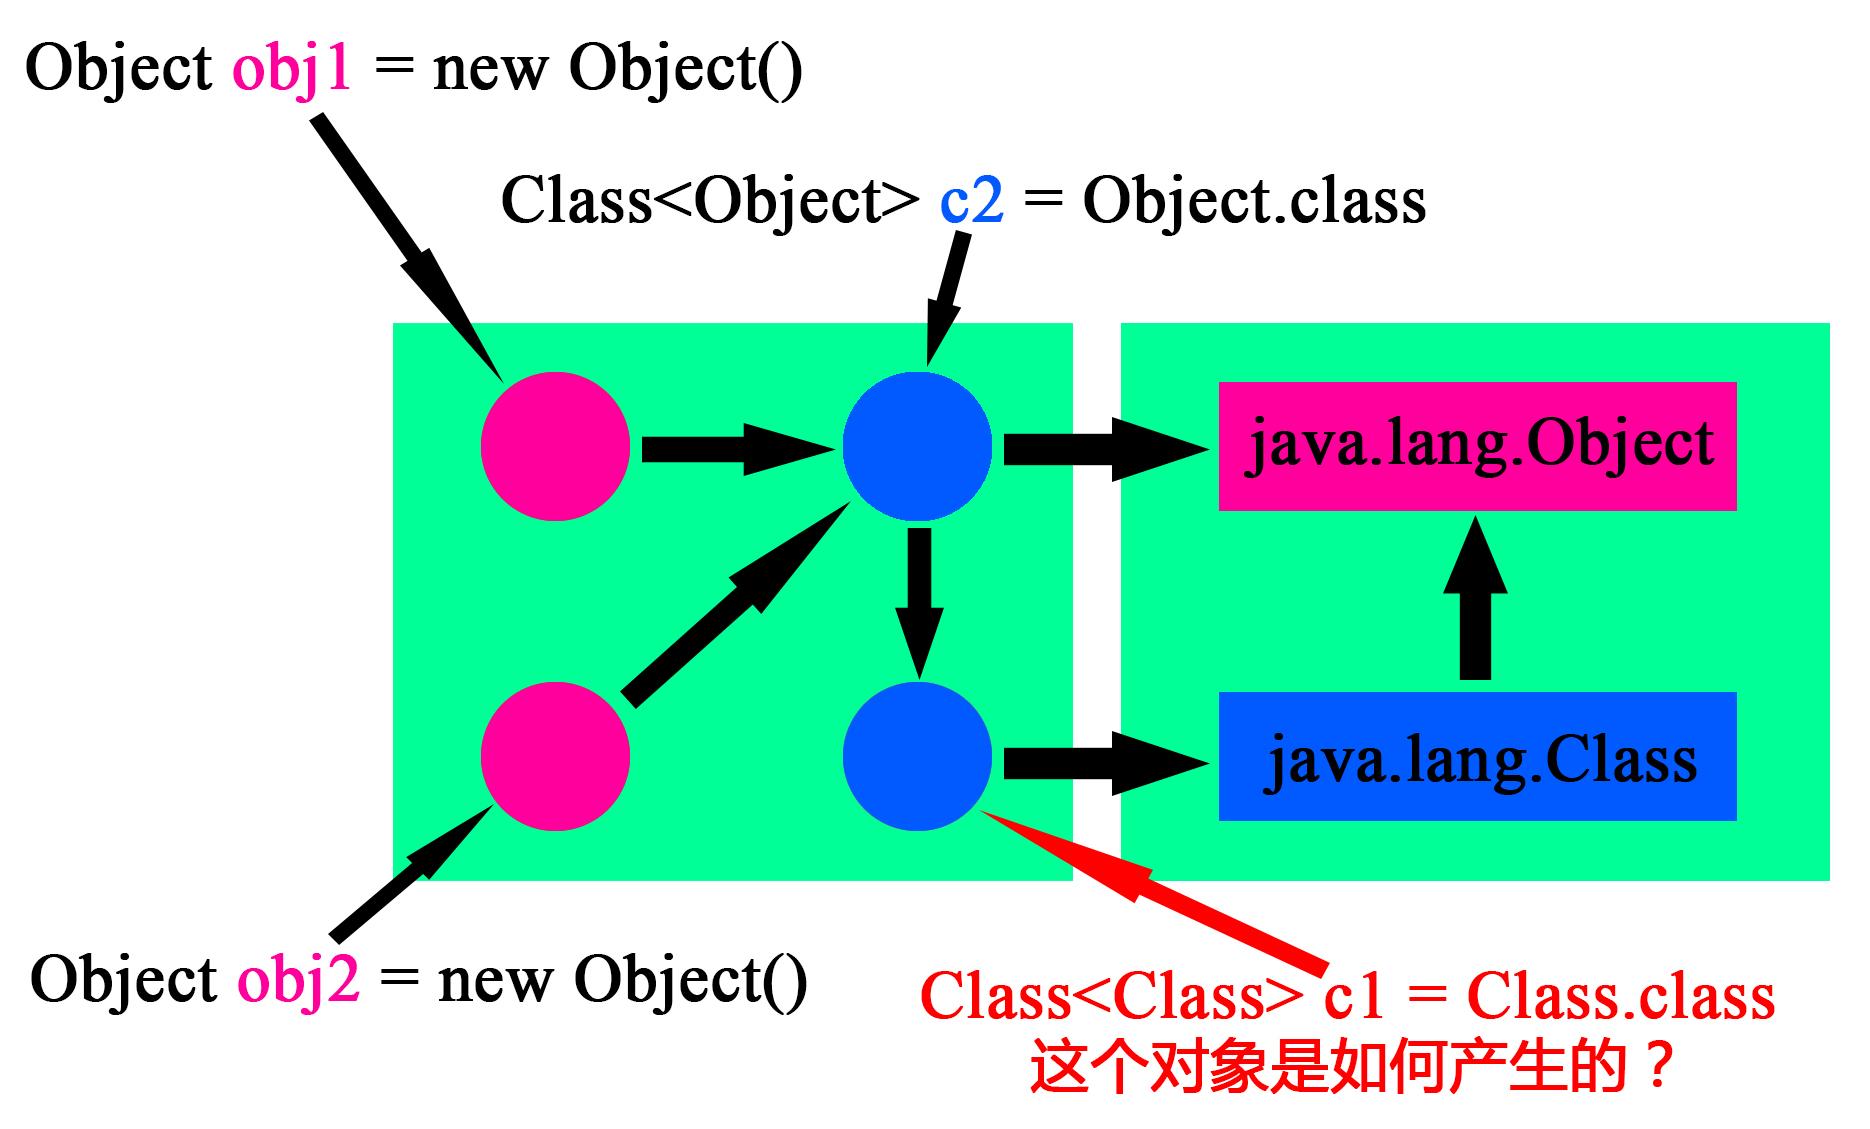 java.lang.Class的第一个实例化对象是如何产生